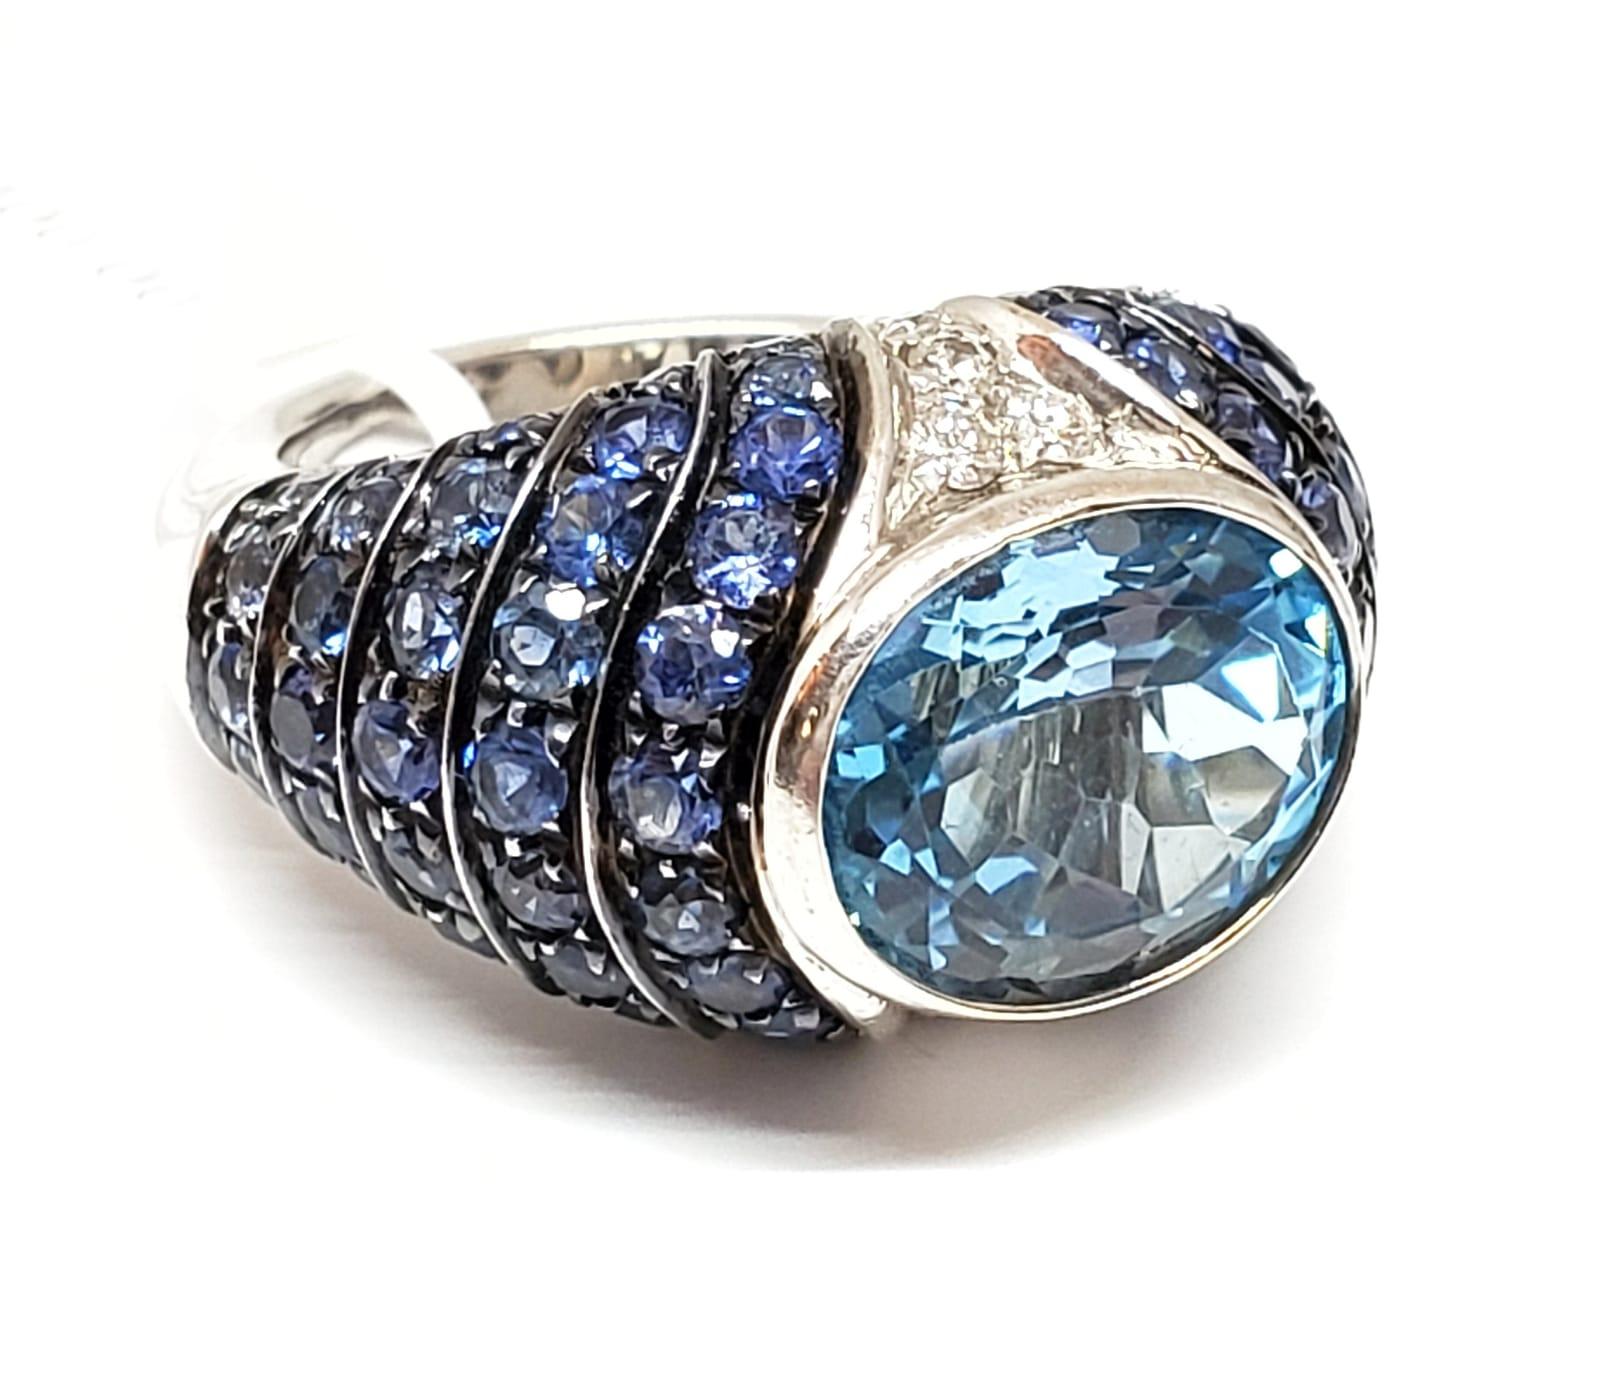 Andreoli, bague en or blanc 18 carats avec topaze bleue et saphirs

Cette bague présente les caractéristiques suivantes
- Diamant de 0,19 carat
- Topaze bleue
- Saphir bleu
- 15.15 Grammes Or blanc 18K
- Fabriqué en Italie